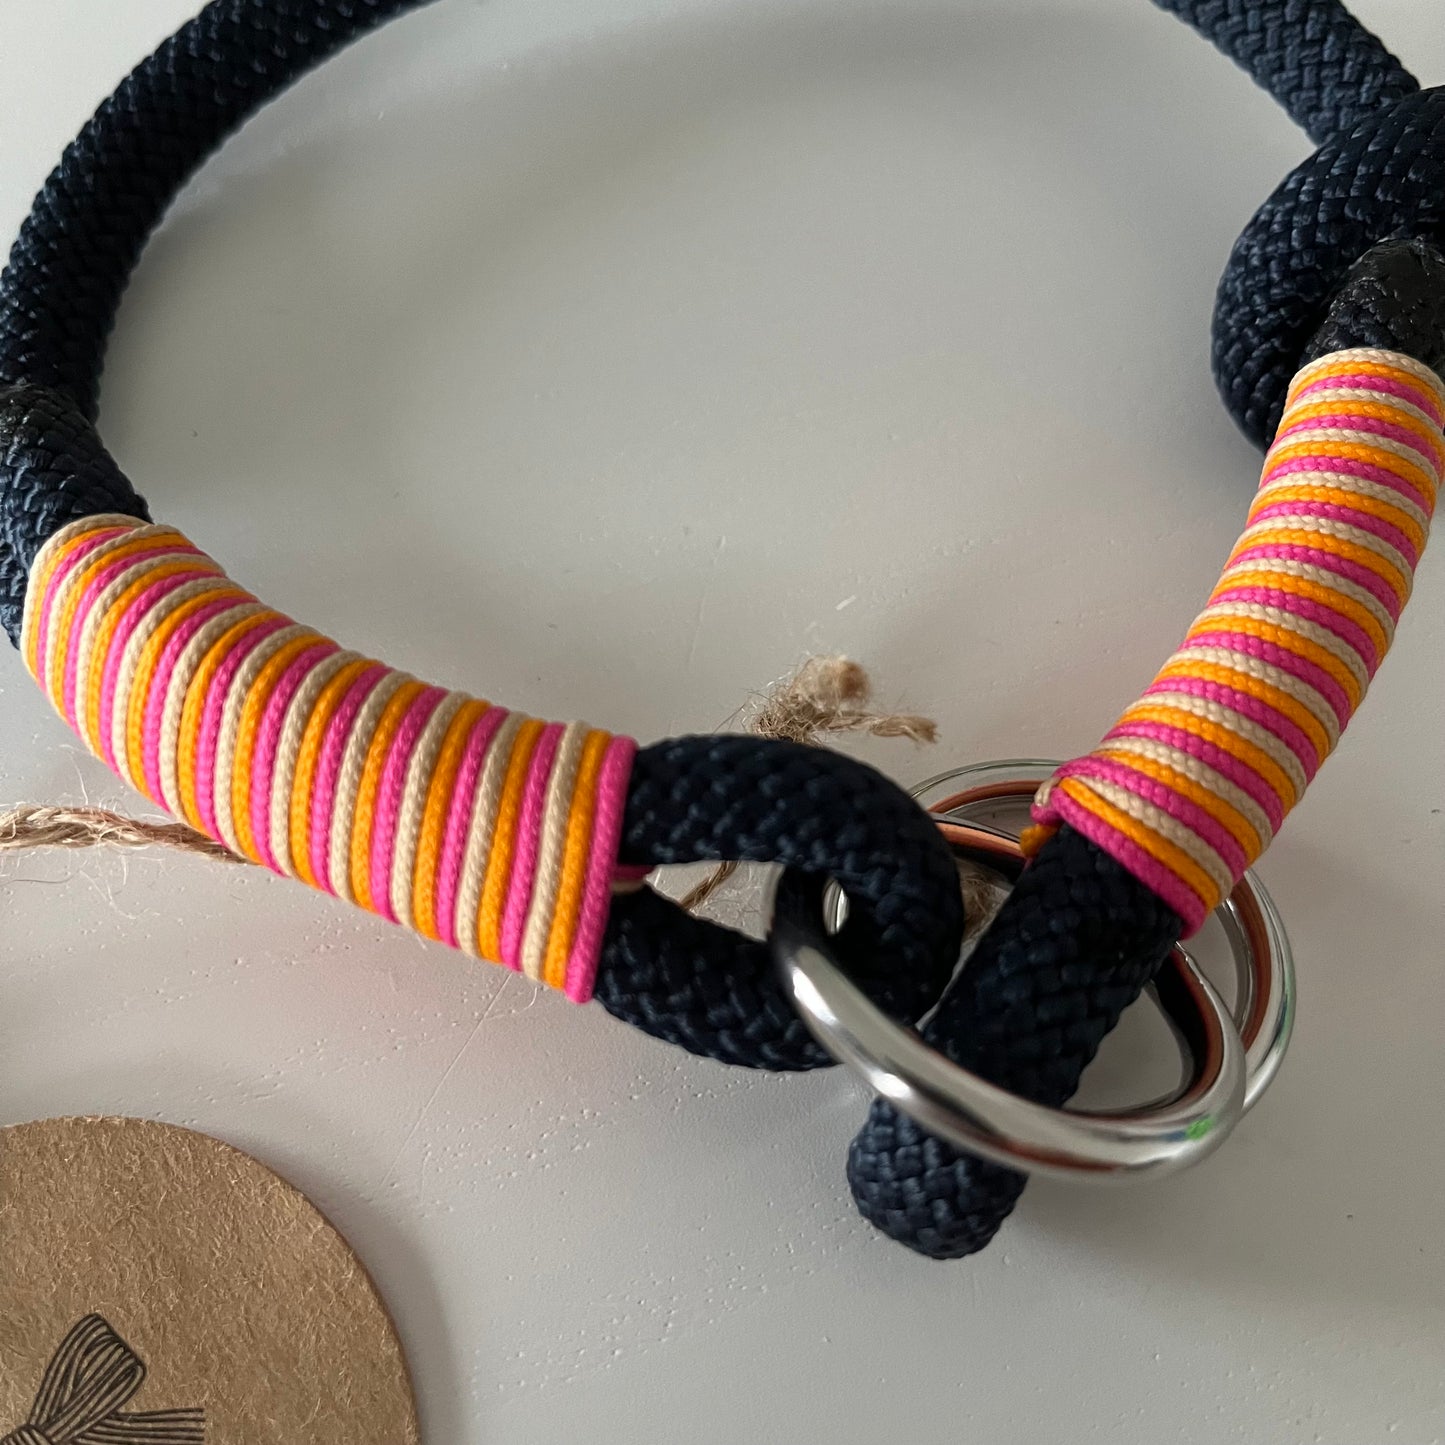 Retrieverhalsband mit Zugstop, tiefseeblau, orange, pink und sand, Größe XS, verstellbar, Einzelstück